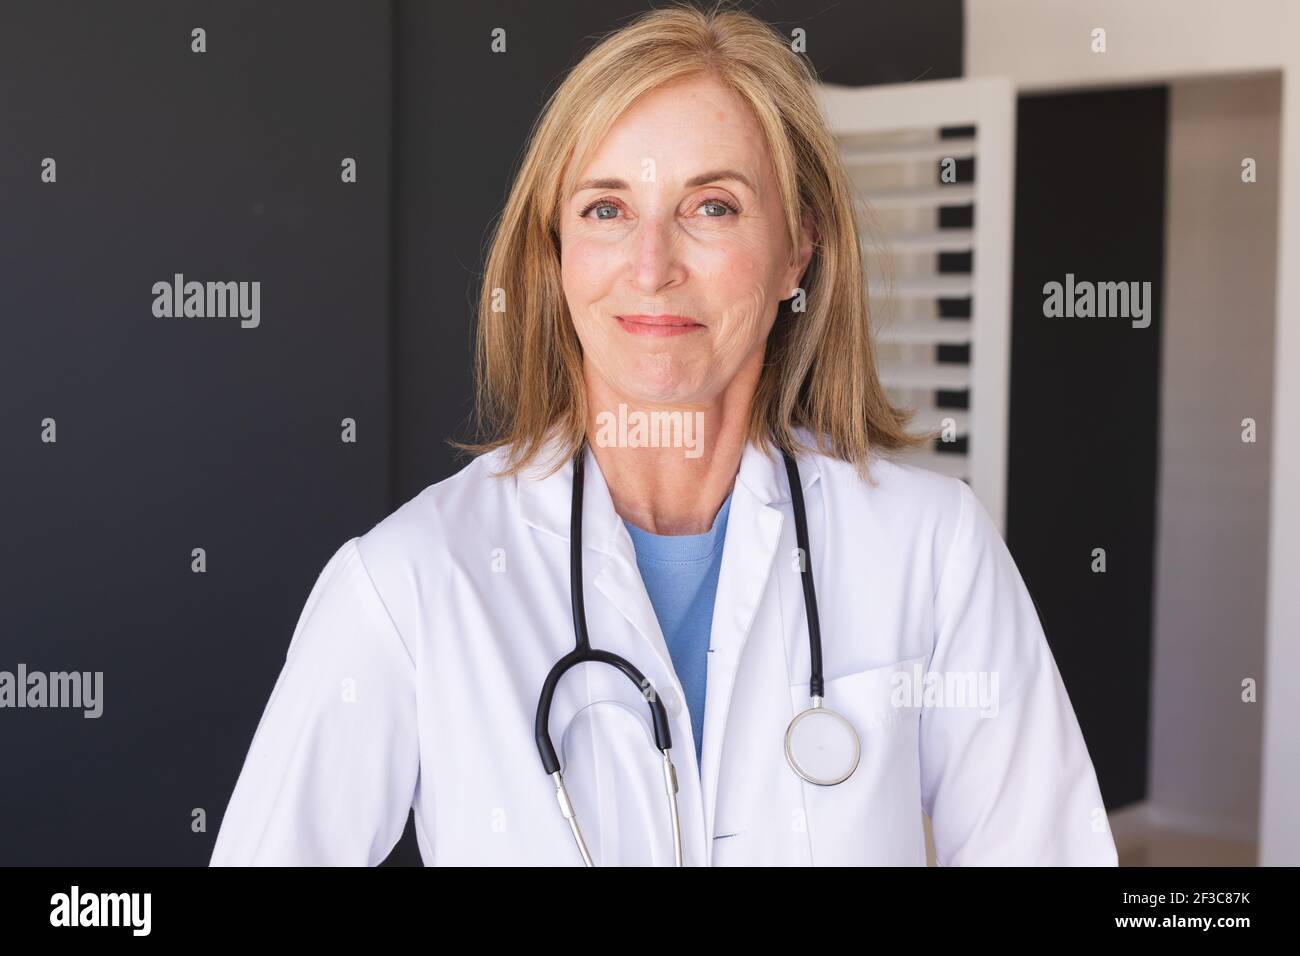 Femme de race blanche, médecin, regardant la caméra et souriant Banque D'Images